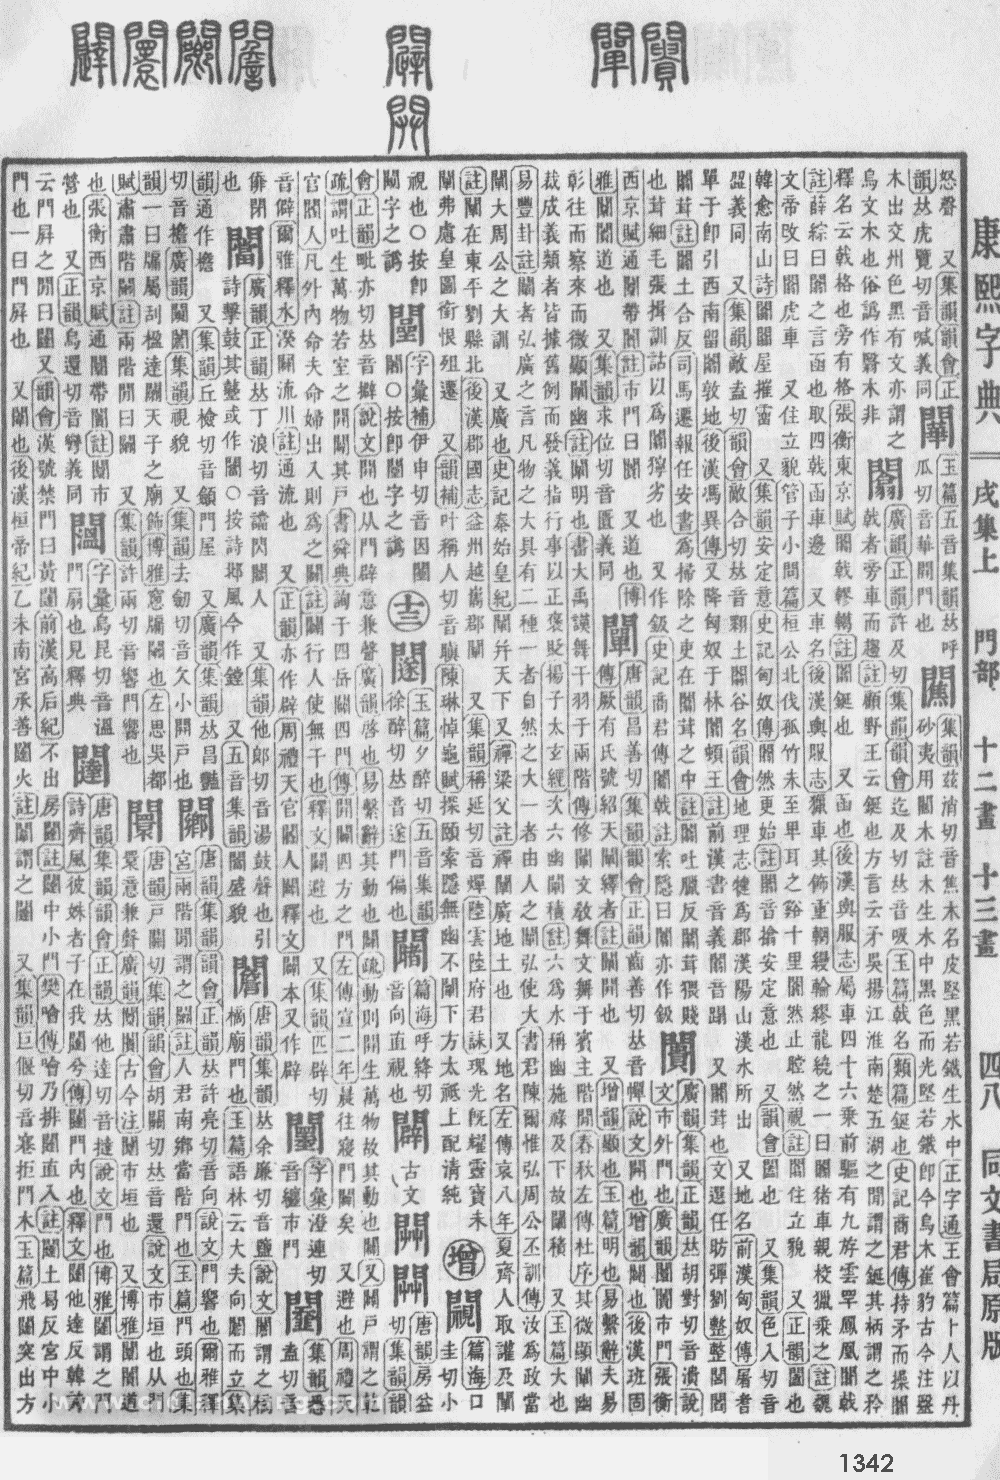 康熙字典掃描版第1342頁